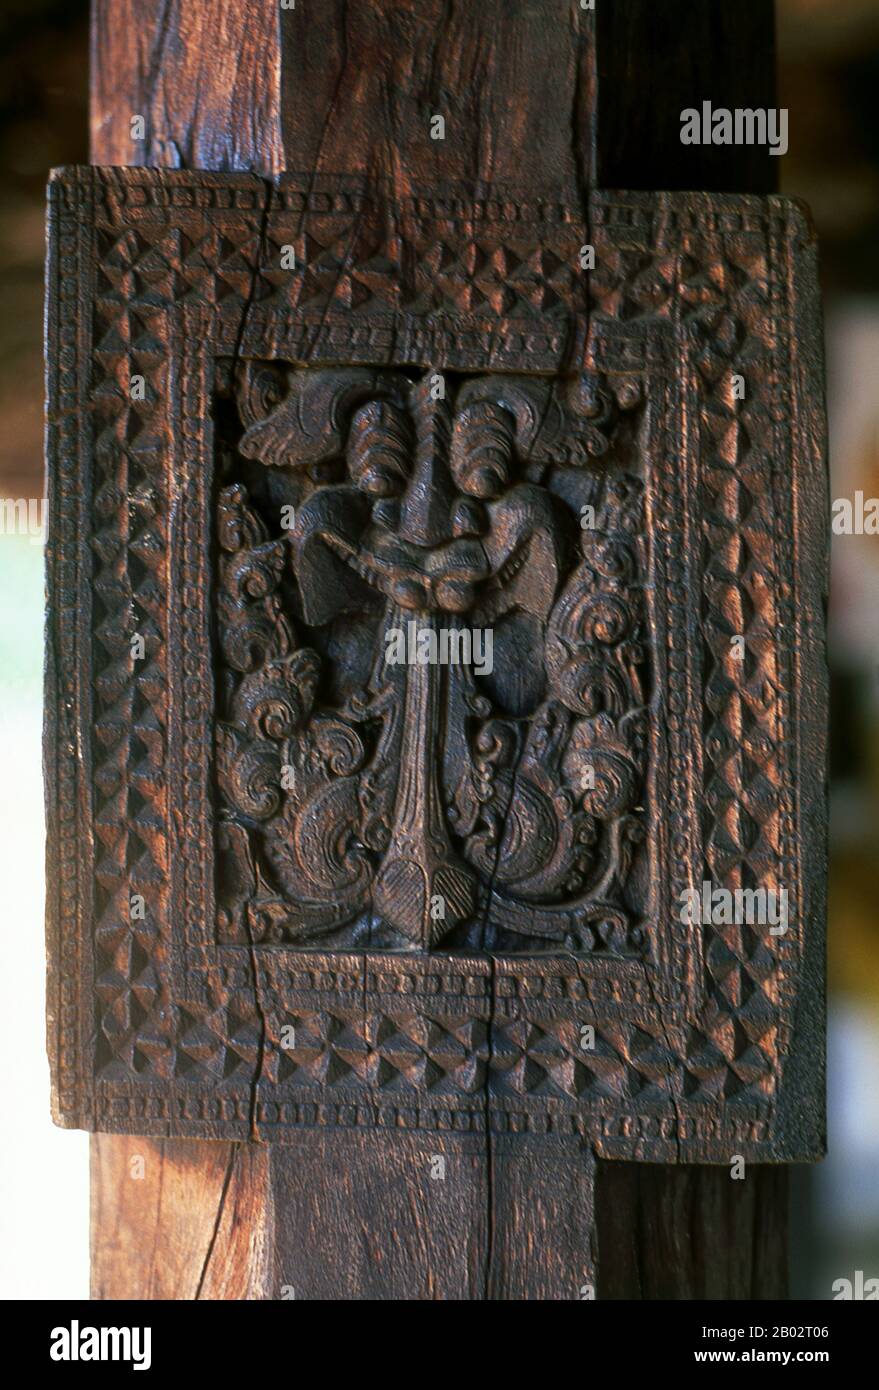 Embekka Devalaya (Tempio di Embekke) fu costruita dal re Vikramabahu III (r.. 1357 - 1374). L'attrazione principale qui è le sculture superbamente mantenute sulle colonne nella Sala Dei Tamburi. Le più belle delle 500 figure sono il ballerino, un'aquila a doppia testa, i cigni e i soldati. Kandy è la seconda città più grande dello Sri Lanka con una popolazione di circa 170.000 abitanti ed è il centro culturale di tutta l'isola. Per circa due secoli (fino al 1815) fu la capitale dello Sri Lanka. Foto Stock